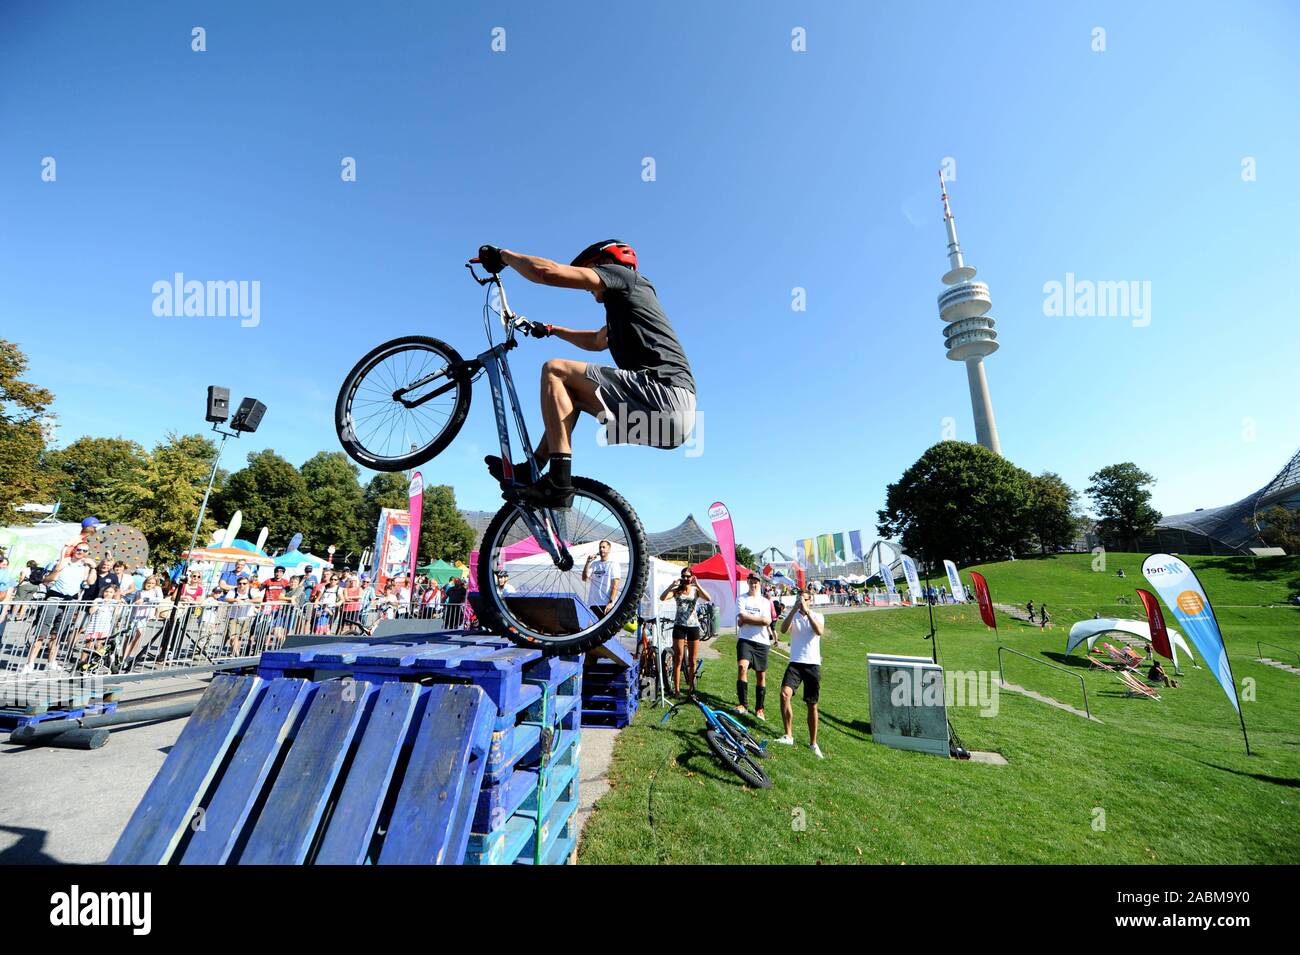 Per la quarta volta, vari sport può essere provato gratuitamente presso il Festival dello sport a Monaco di Baviera il Parco Olimpico. Questa è la Mountain Bike. [Traduzione automatizzata] Foto Stock